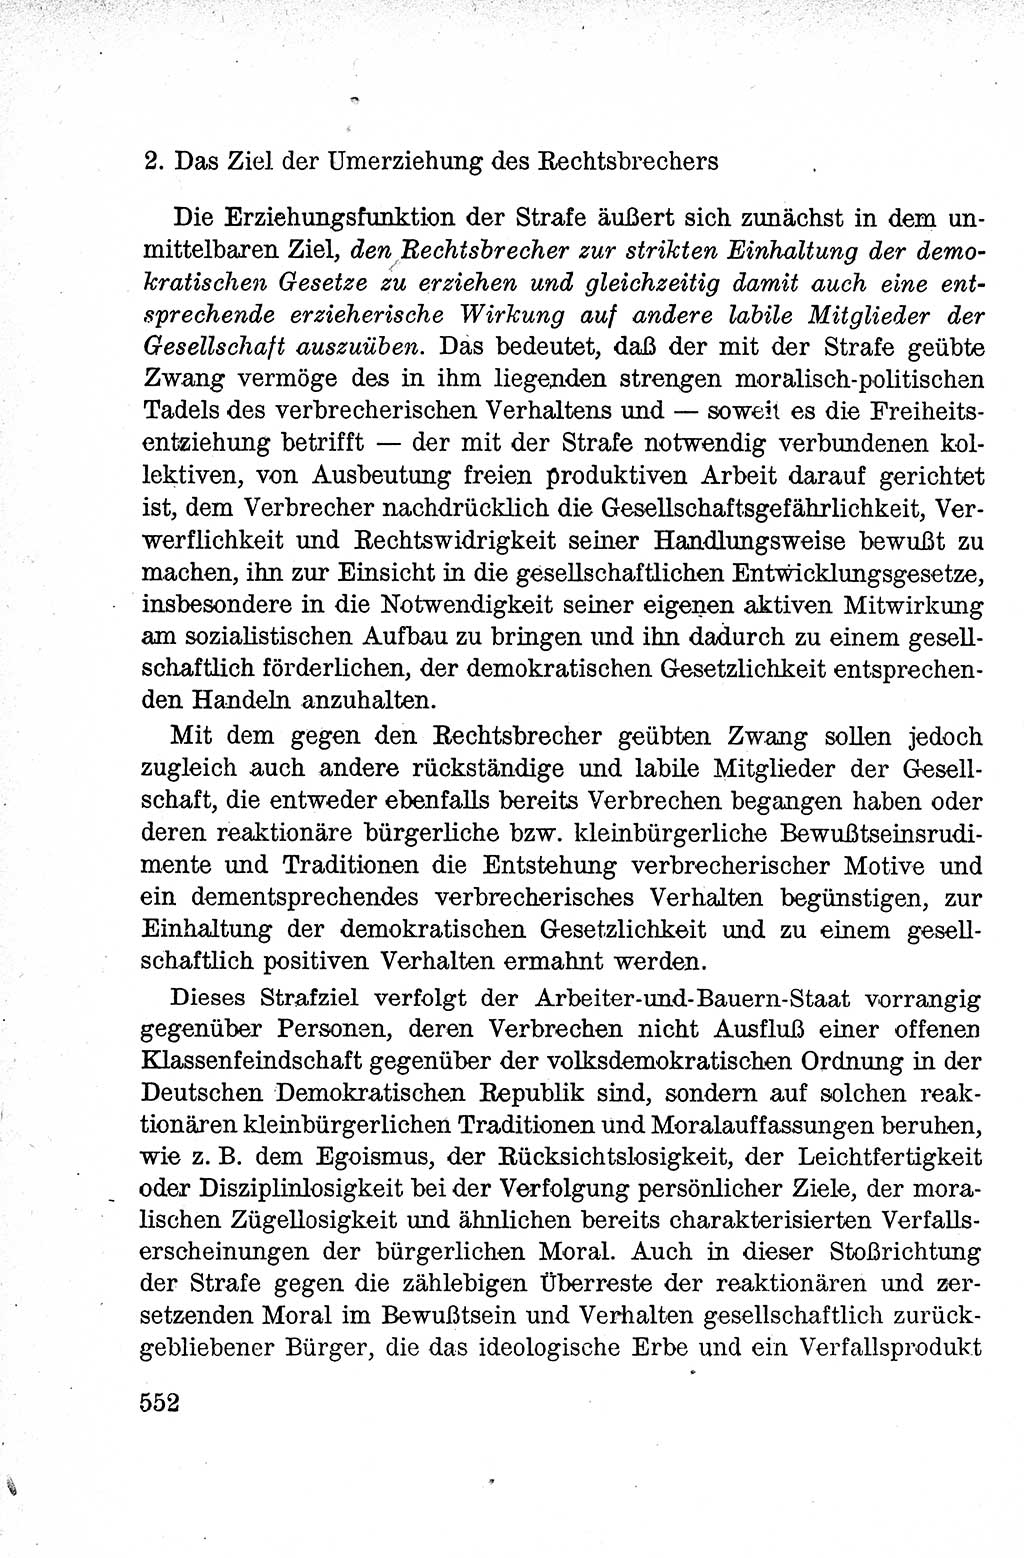 Lehrbuch des Strafrechts der Deutschen Demokratischen Republik (DDR), Allgemeiner Teil 1959, Seite 552 (Lb. Strafr. DDR AT 1959, S. 552)